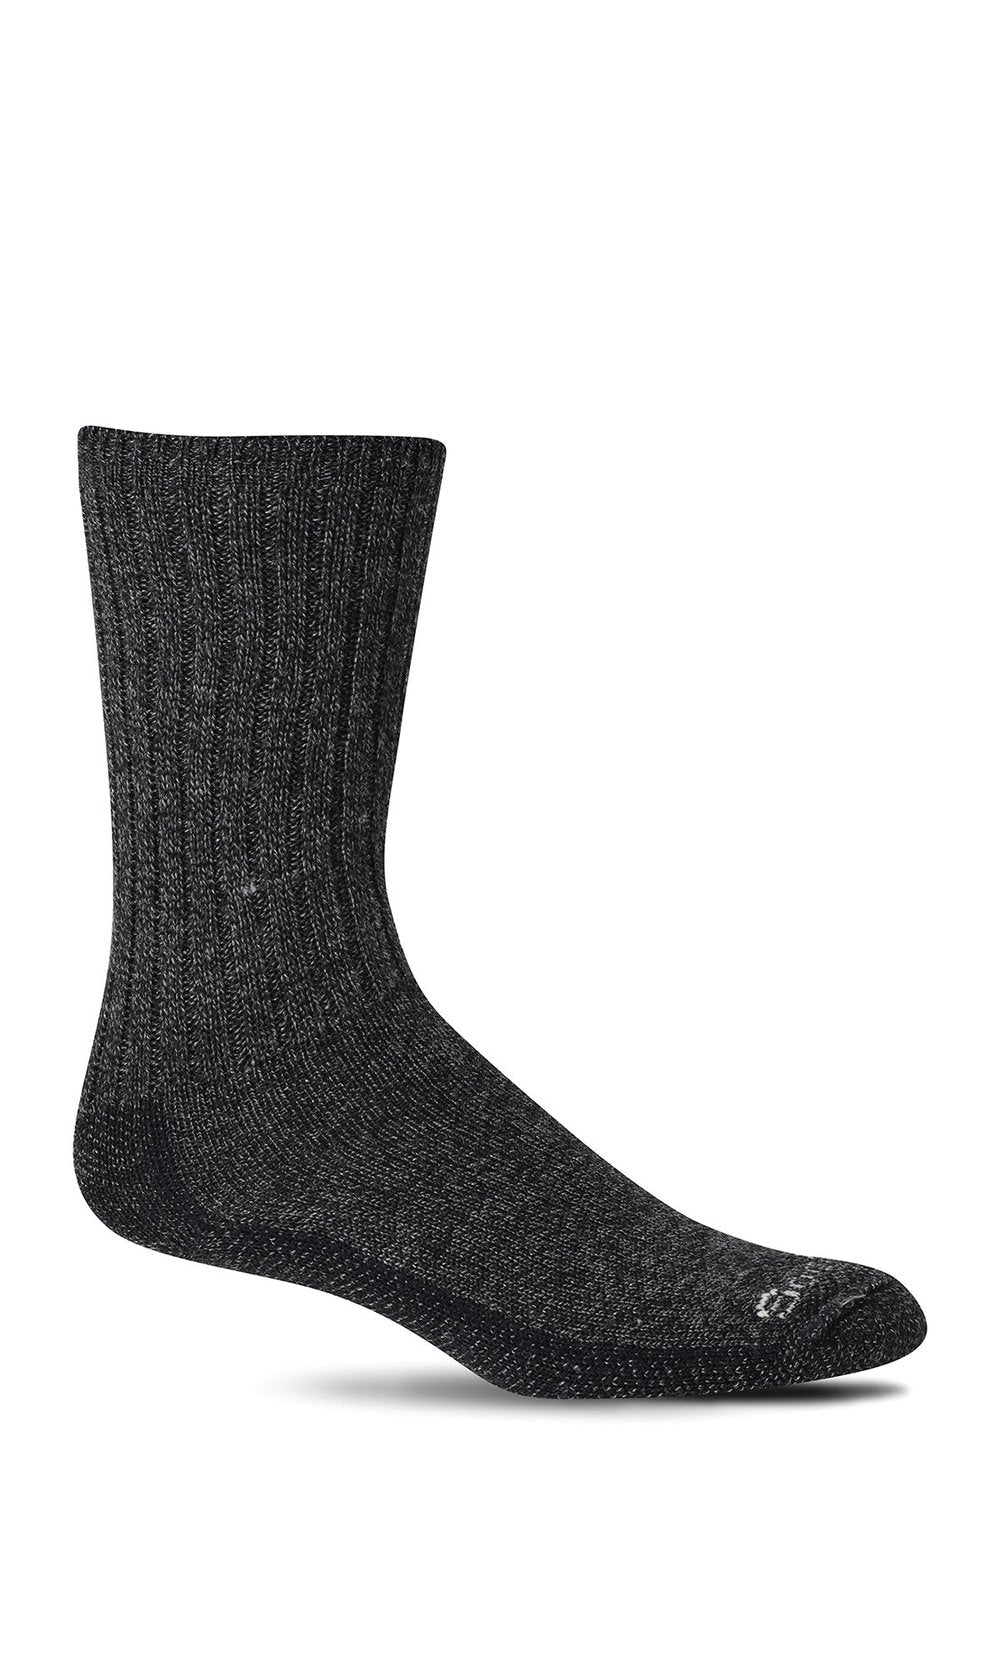 Sockwell - Women's Big Easy Relaxed Fit Socks - Black Multi